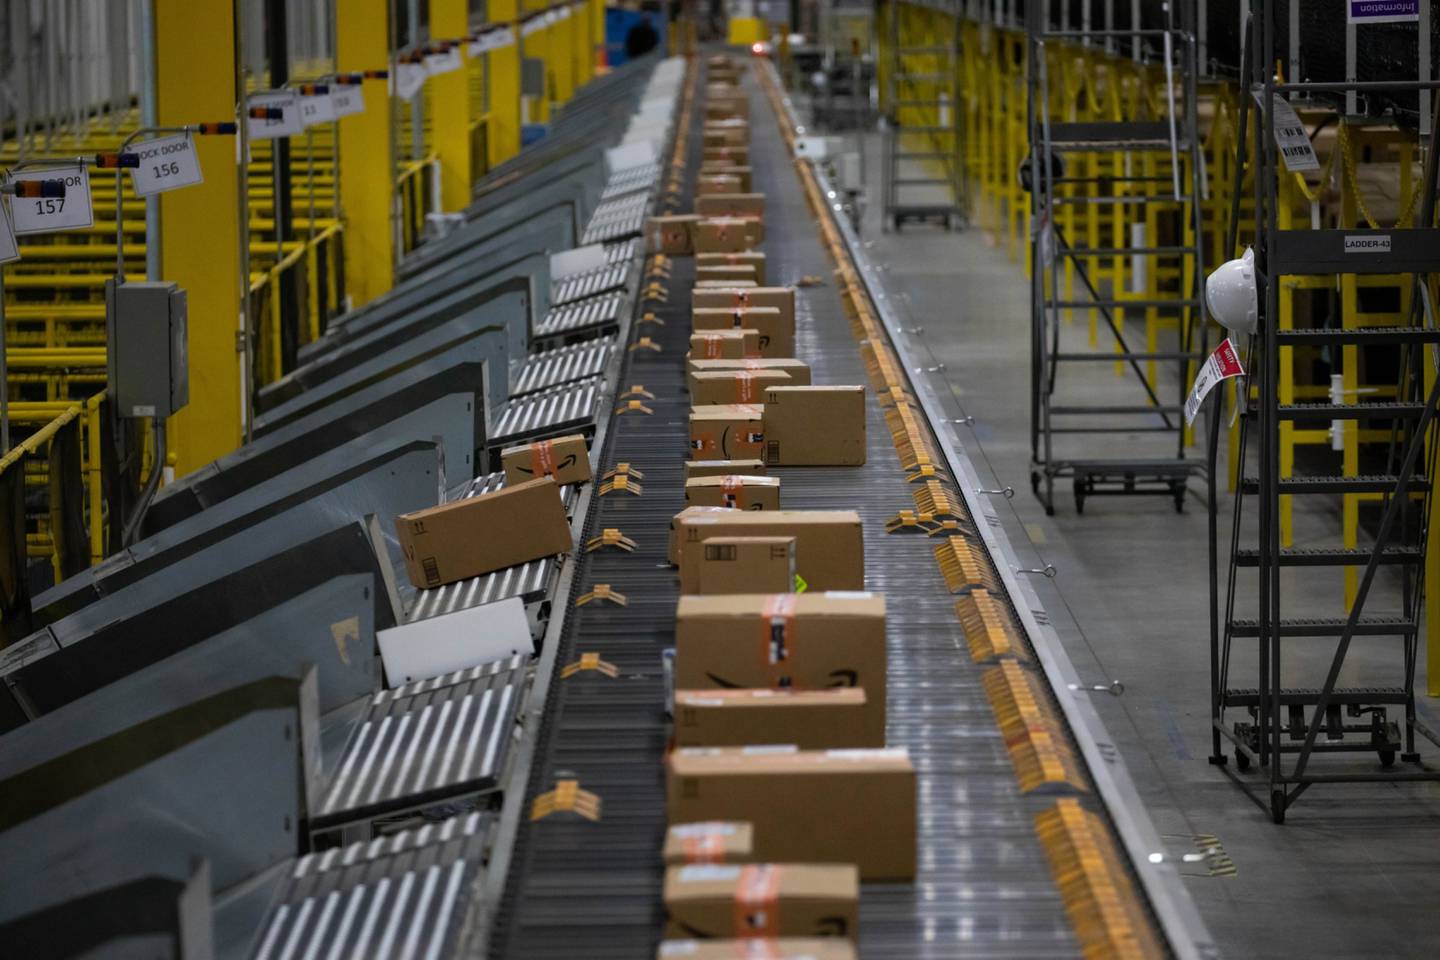 Paquetes avanzan a lo largo de una cinta transportadora en un centro de Amazon en Robbinsville, Nueva Jersey.dfd